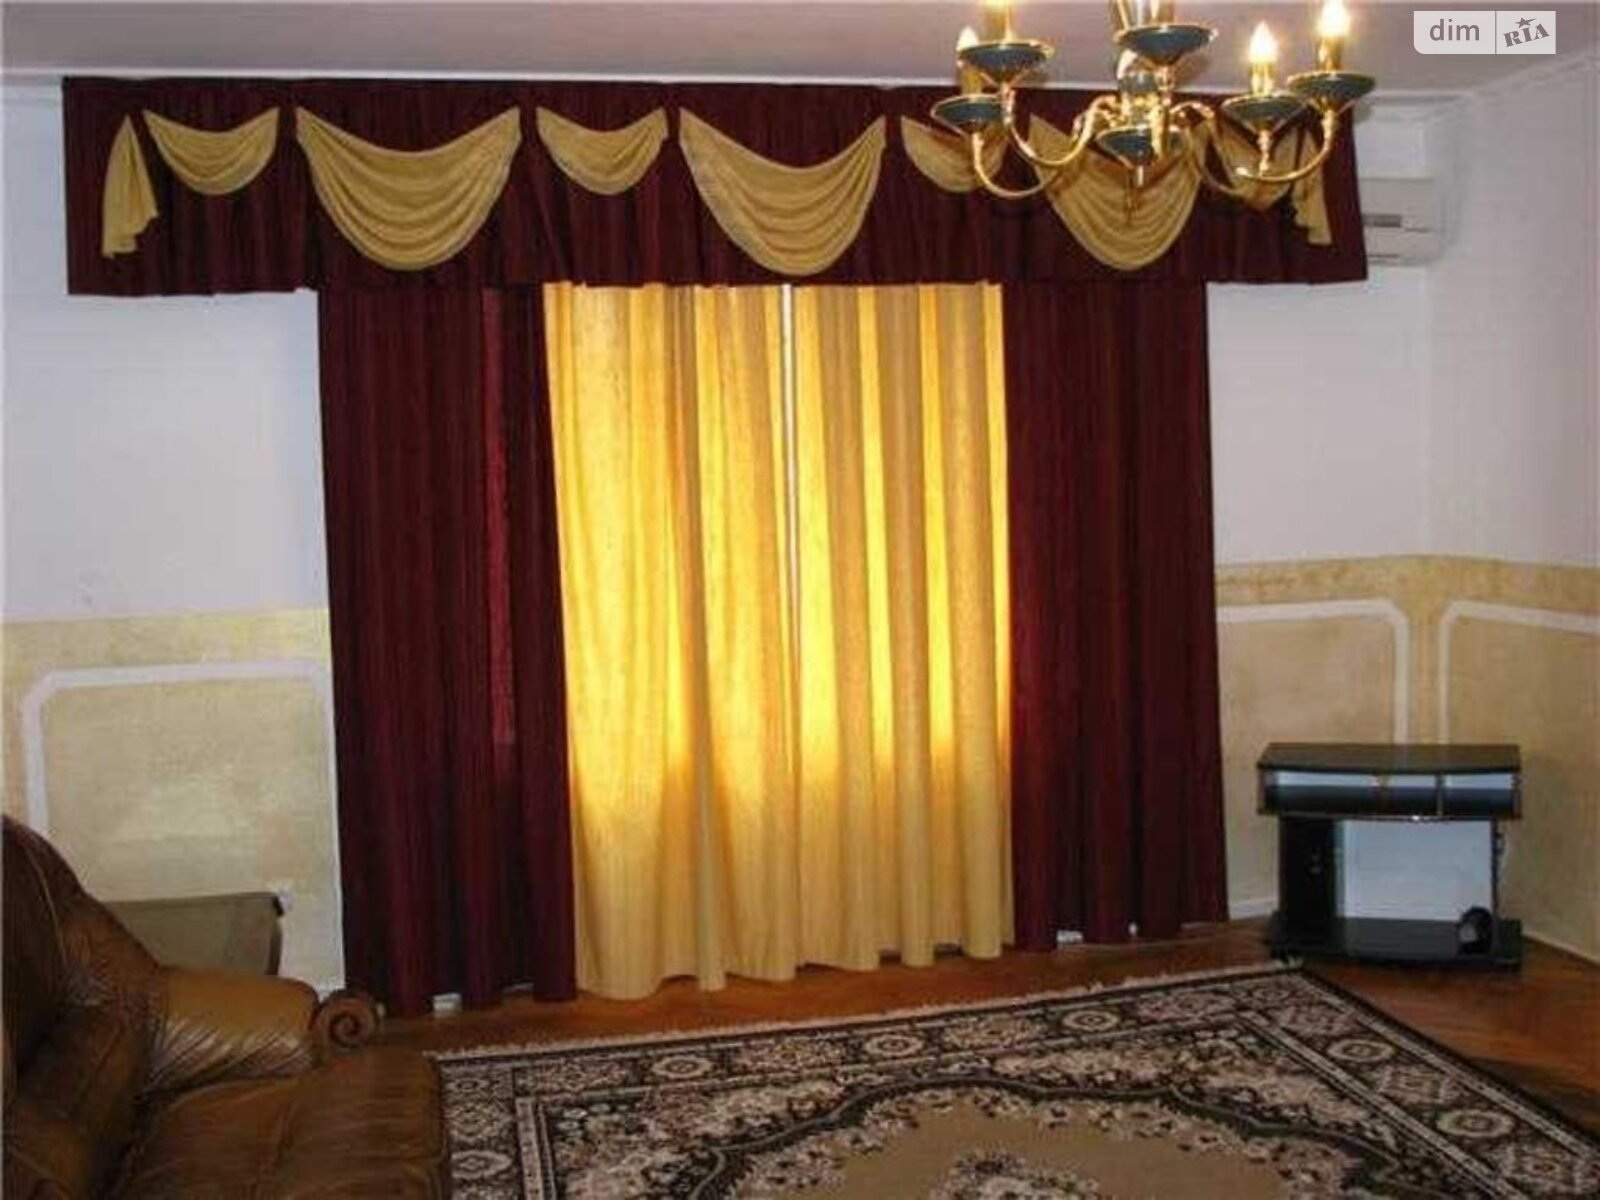 Продаж частини будинку в Ужгороді, площа Егана, район Свепомоц, 3 кімнати фото 1